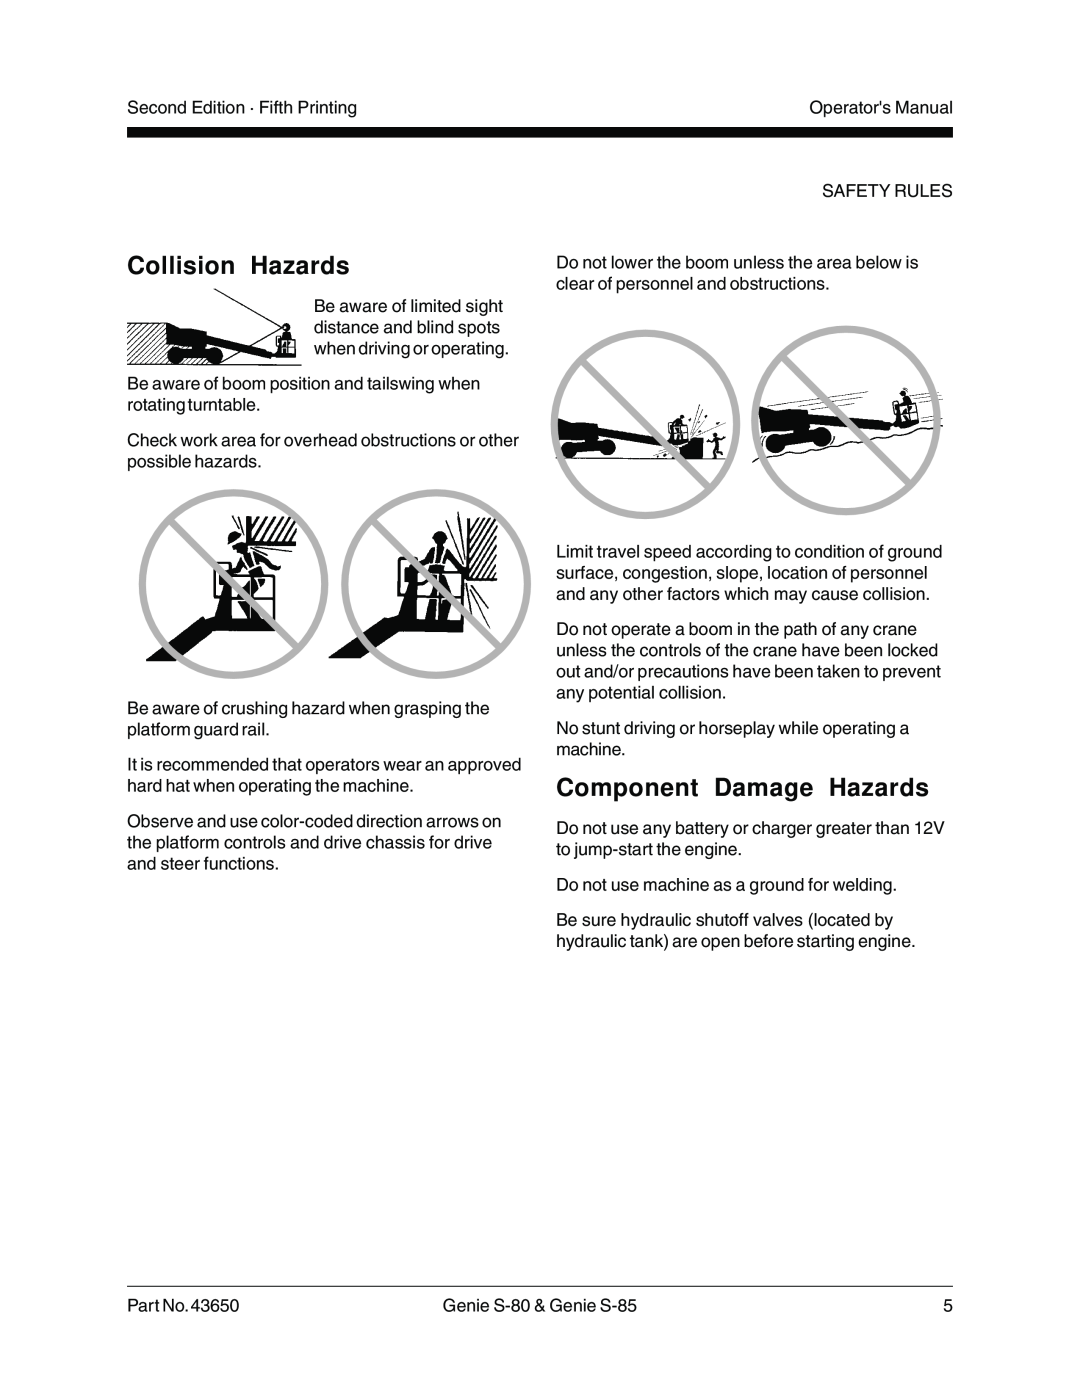 Genie S-85, S-80, 43650 manual Collision Hazards, Component Damage Hazards 